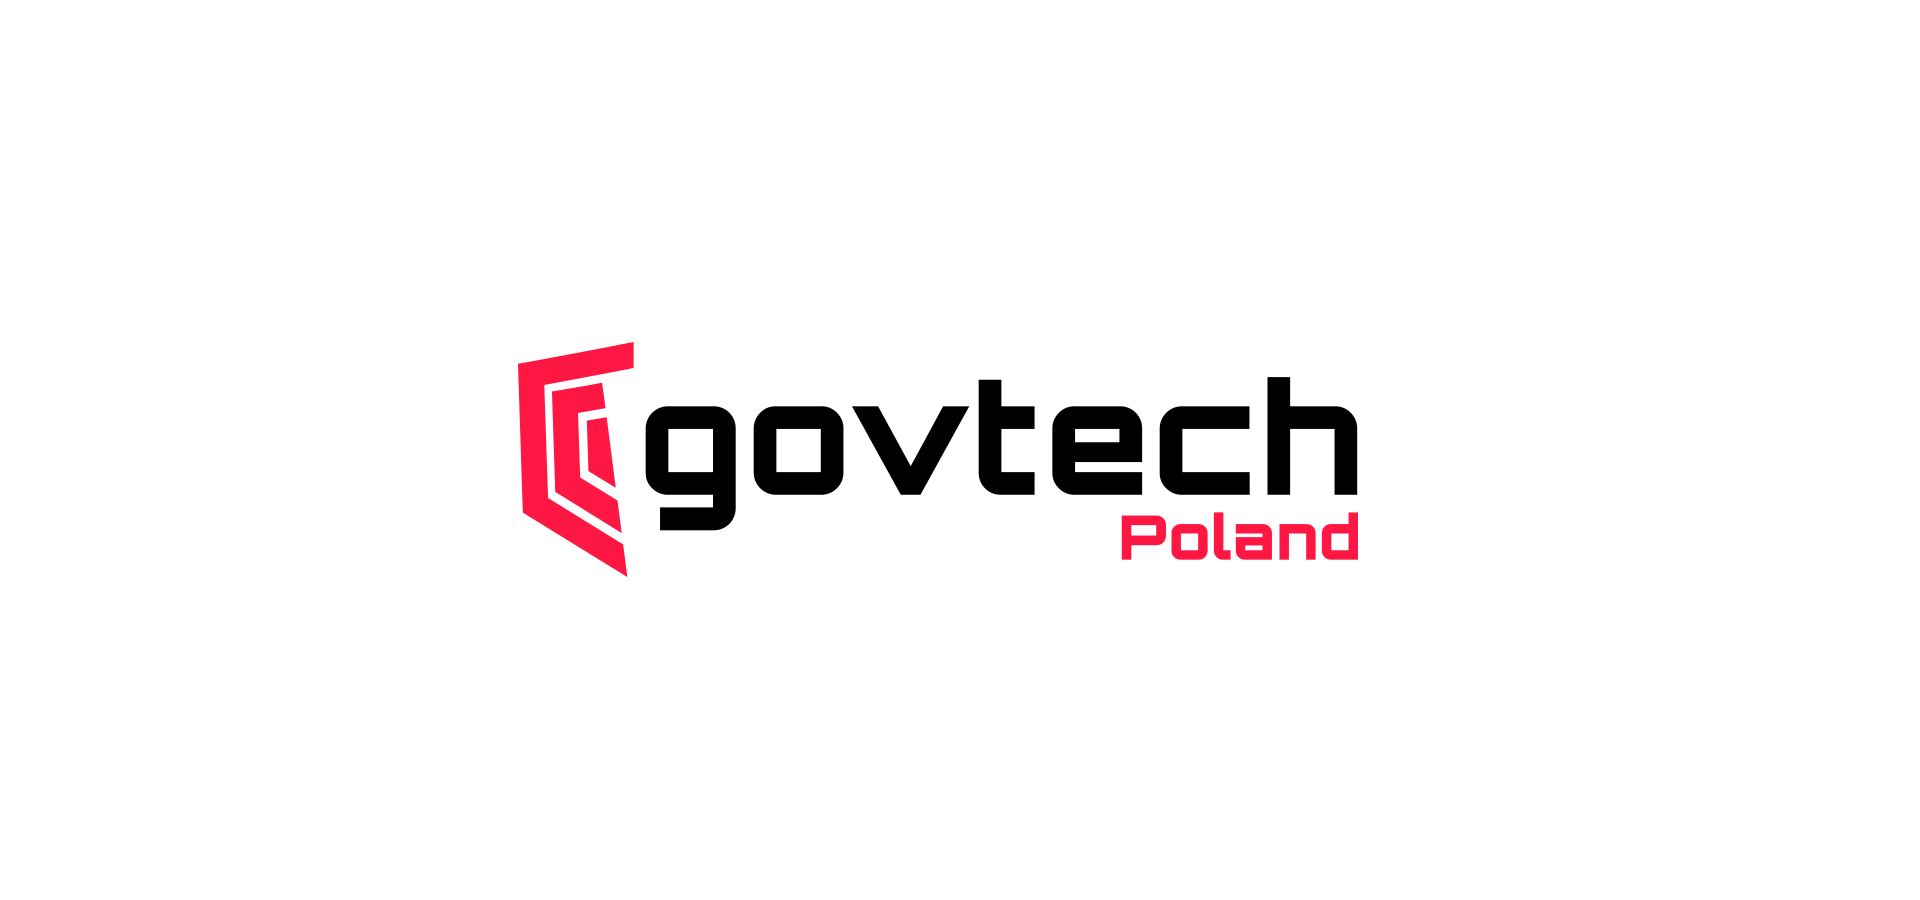 logo GovTech Polska